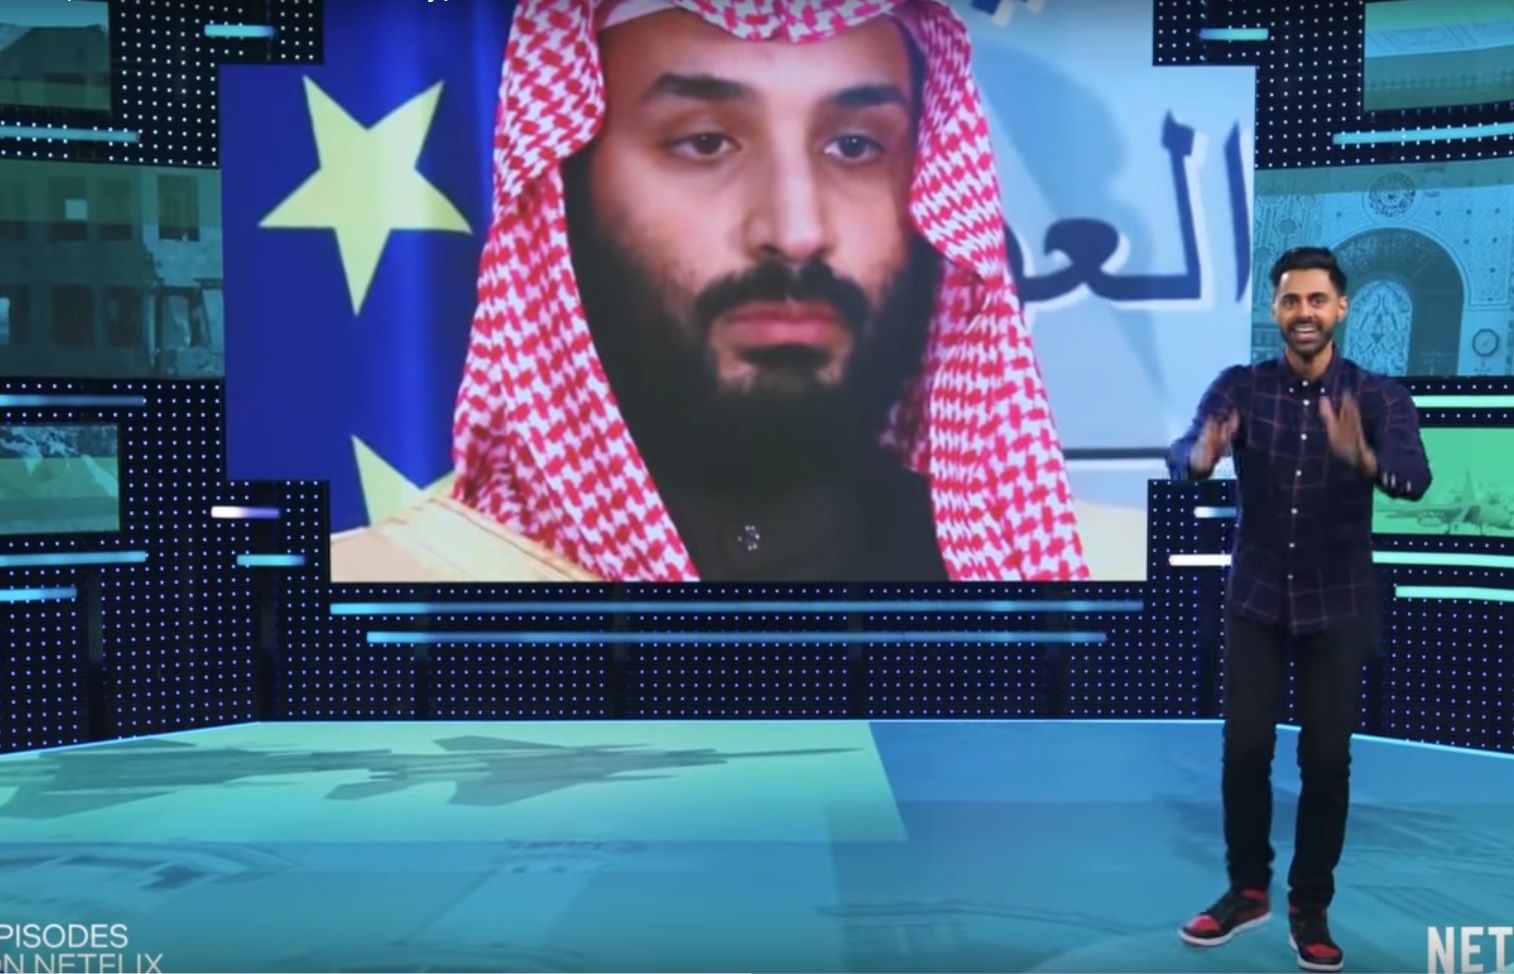 Eltüntetett egy epizódot kínálatából a Netflix, miután a szaúdi vezetés kifogást emelt ellene